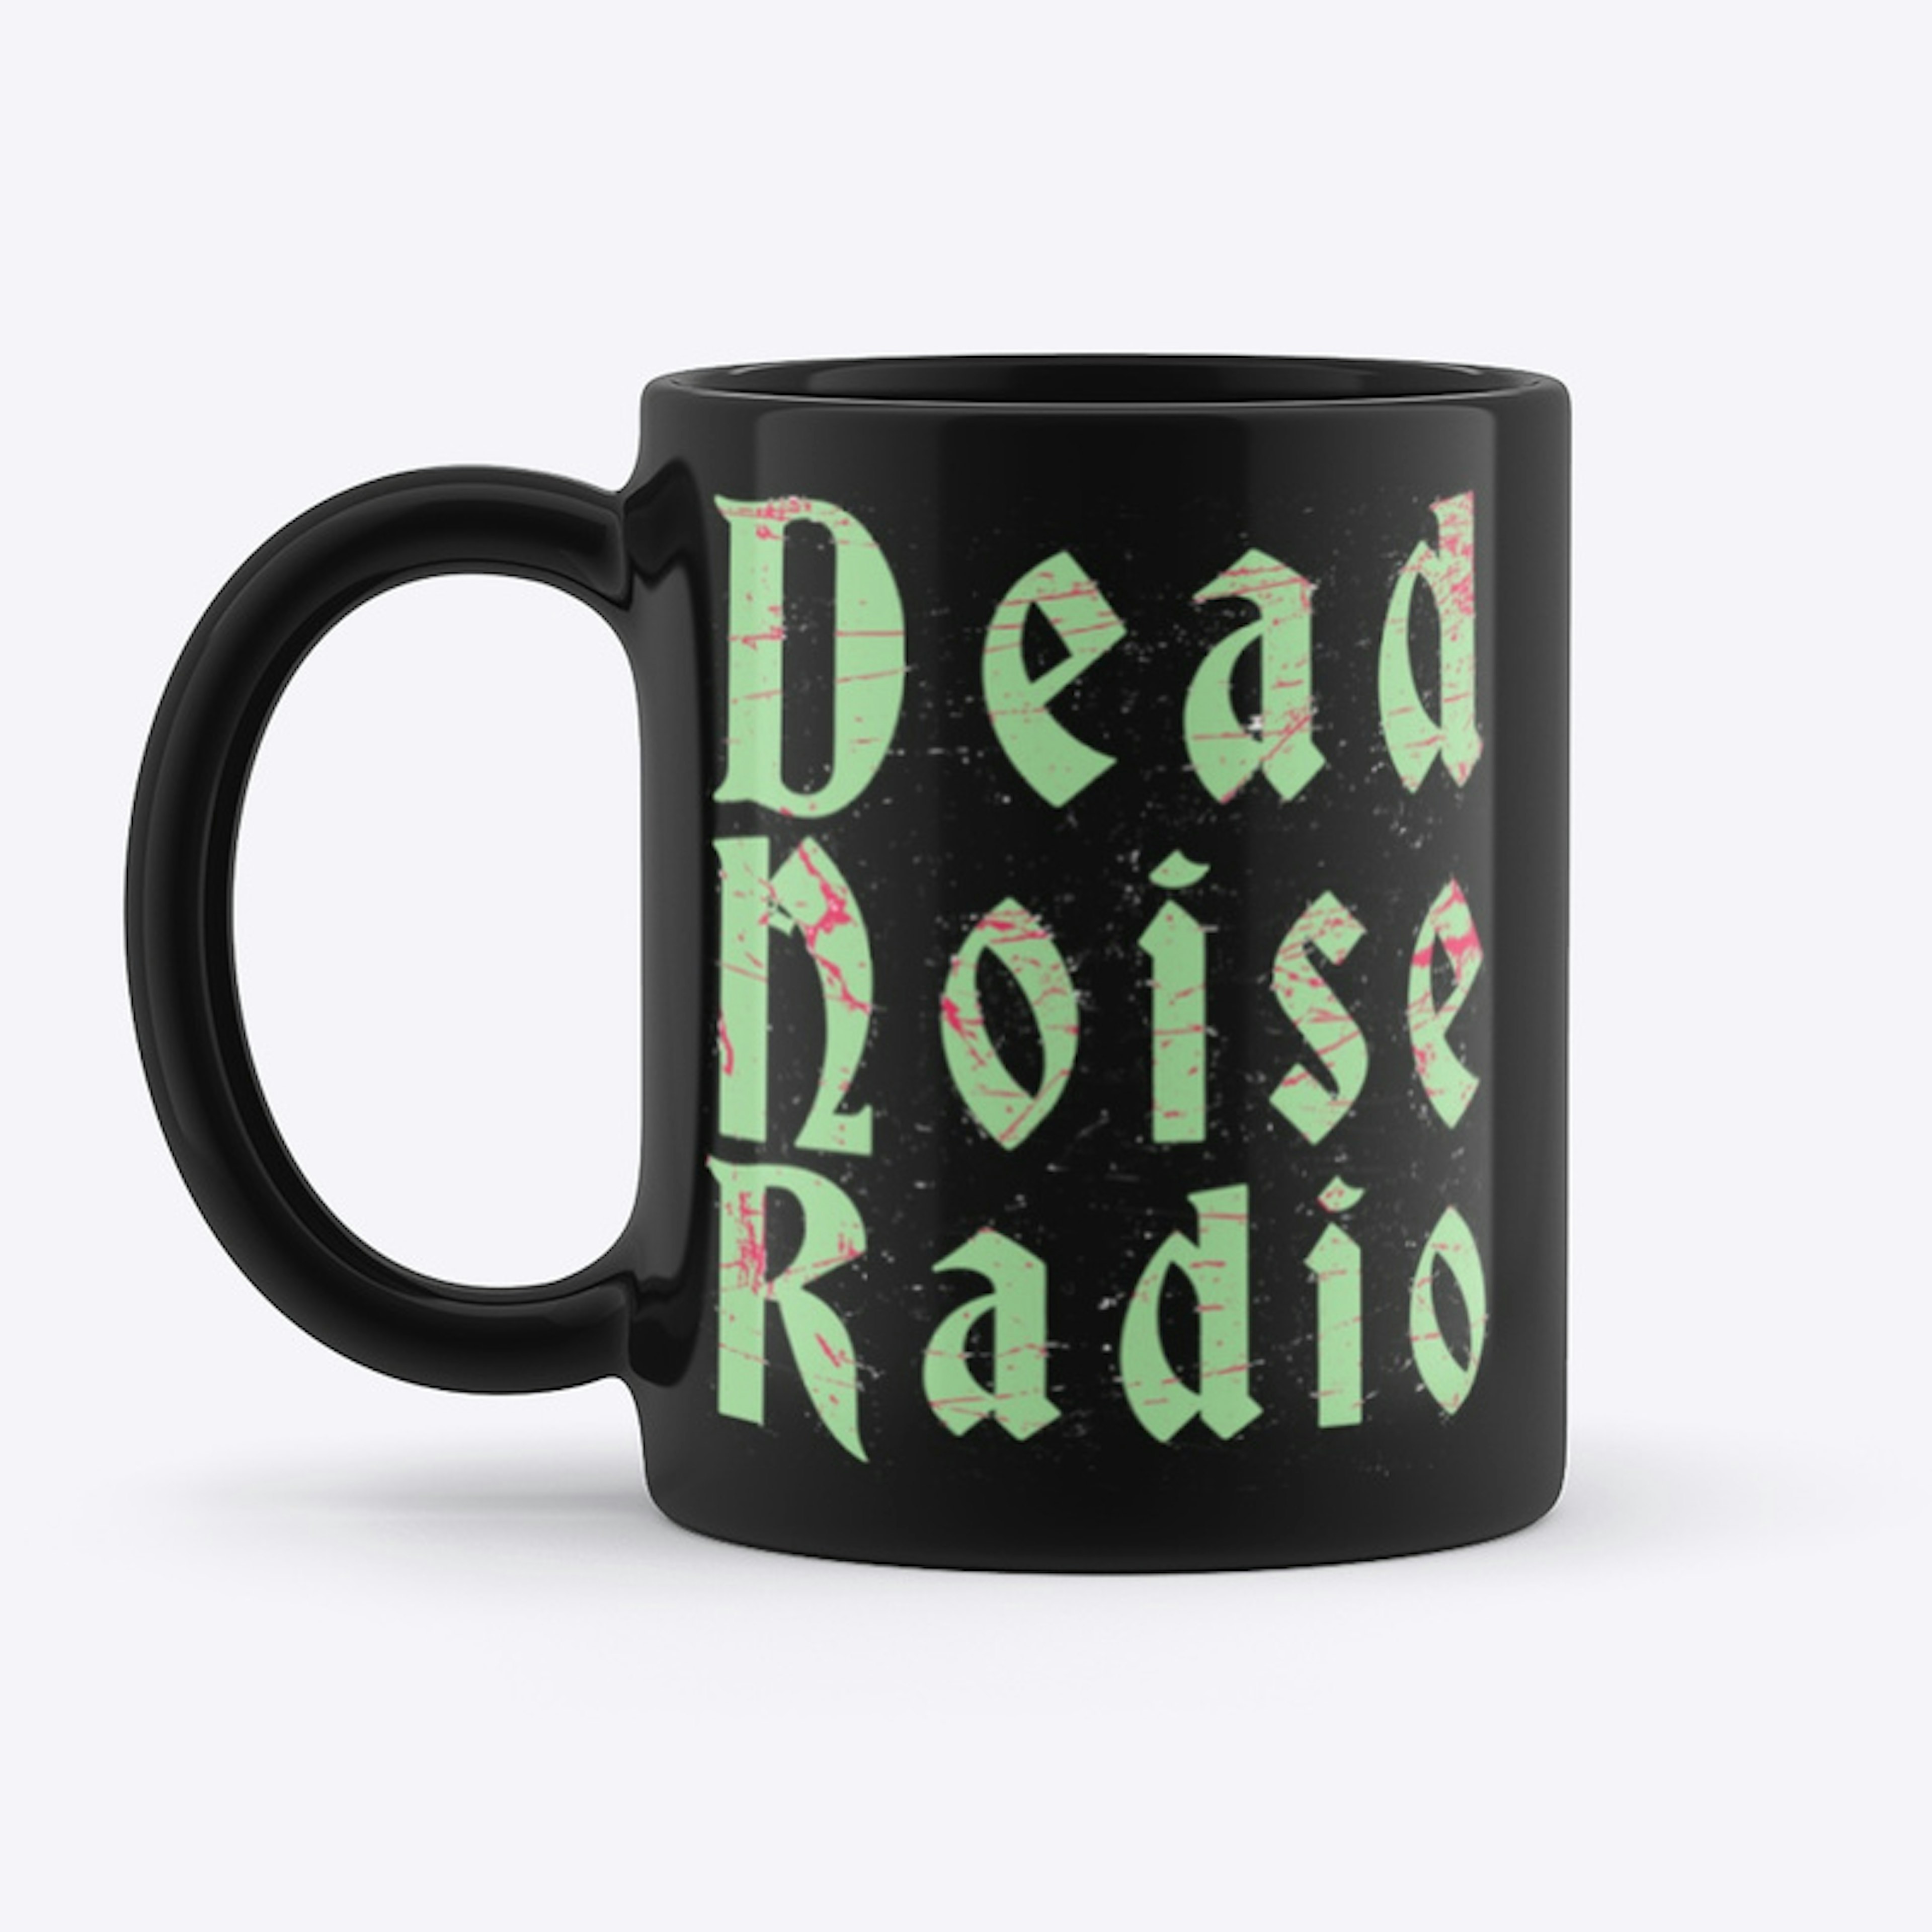 DEAD NOISE RADIO - DEATH MUG OF DEATH